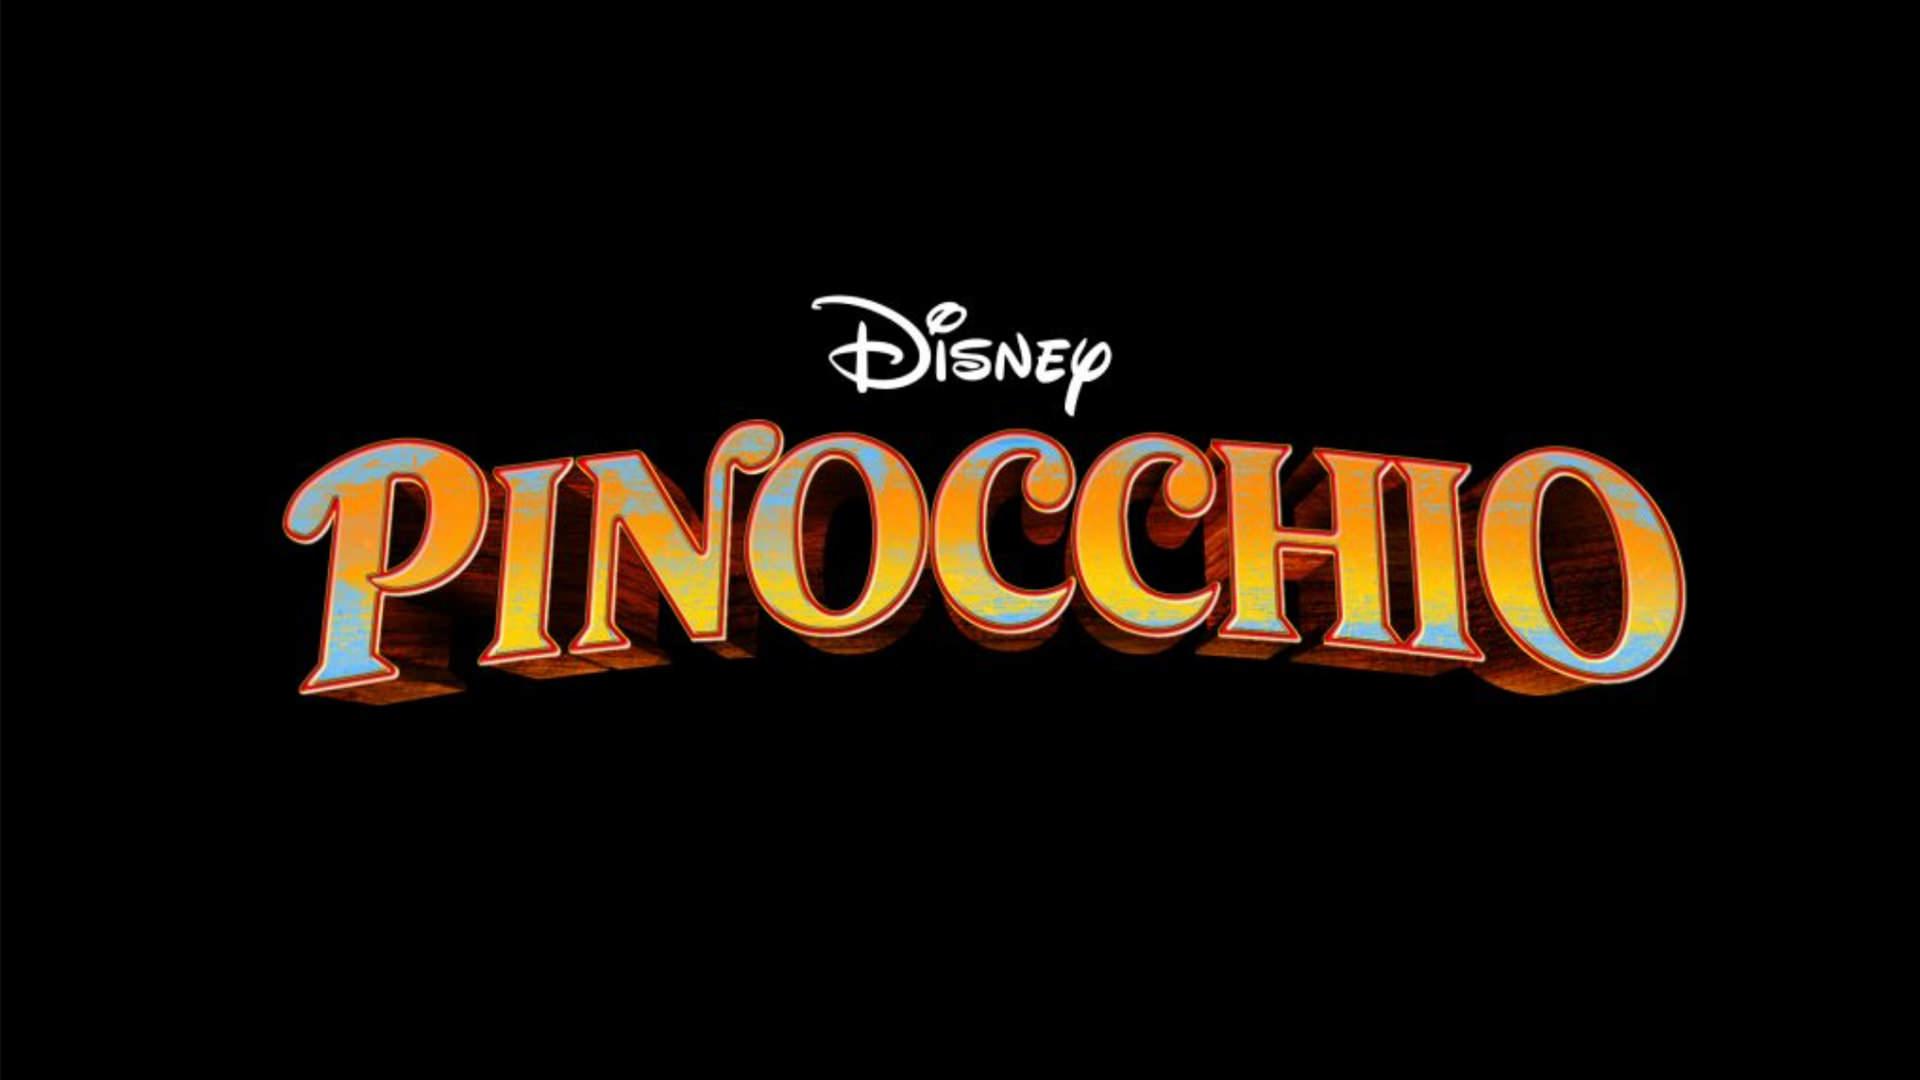 لوگو فیلم Pinocchio